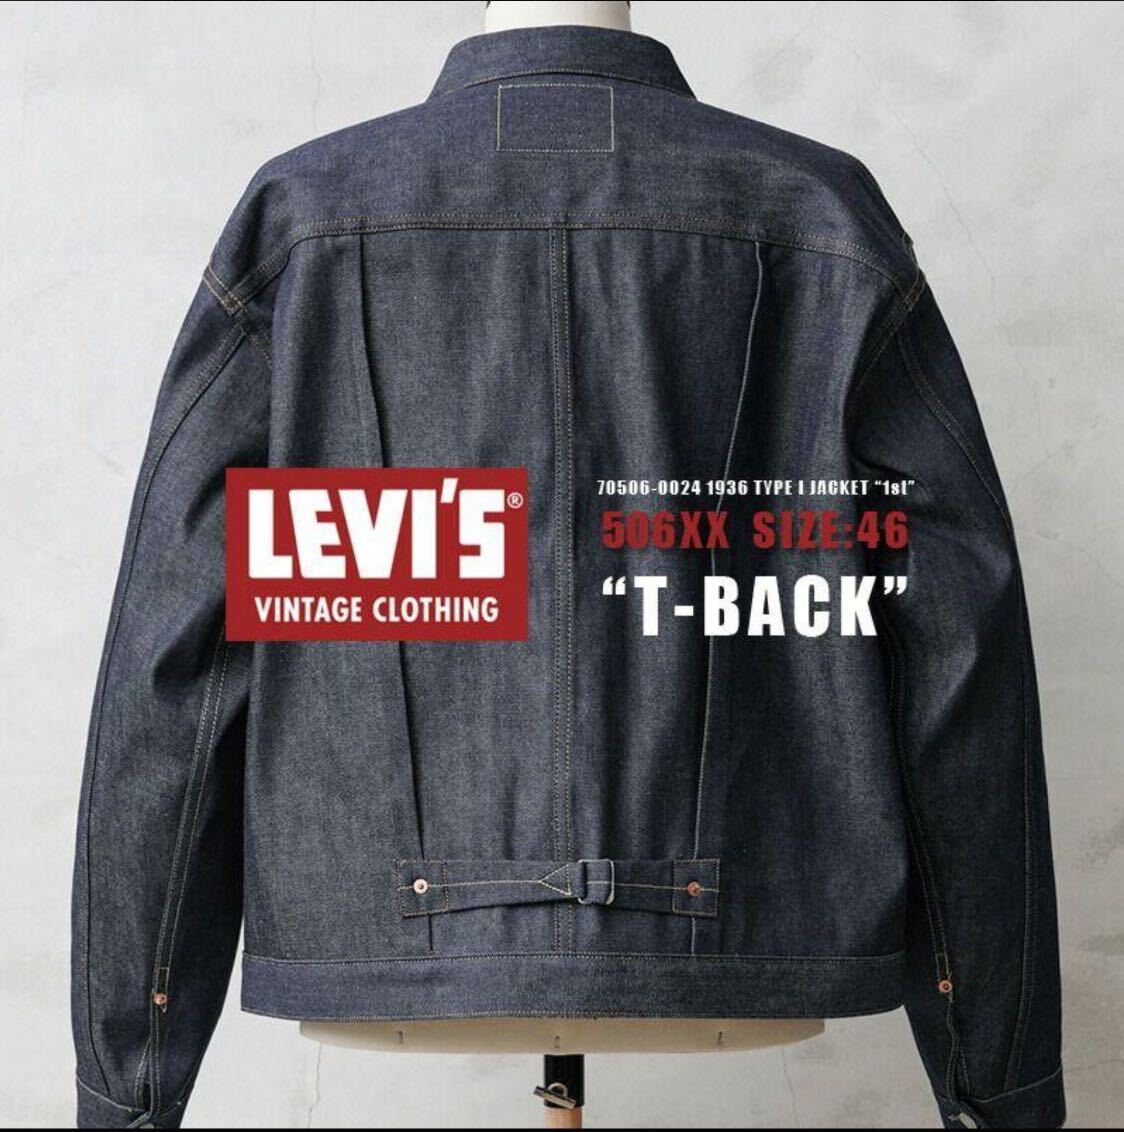 【2022年 日本製 size46】Levi's リーバイス 70506-0024 506xx 1936 T-BACK LVC levi's vintage clothing 1st デニム ジャケット Gジャンの画像1